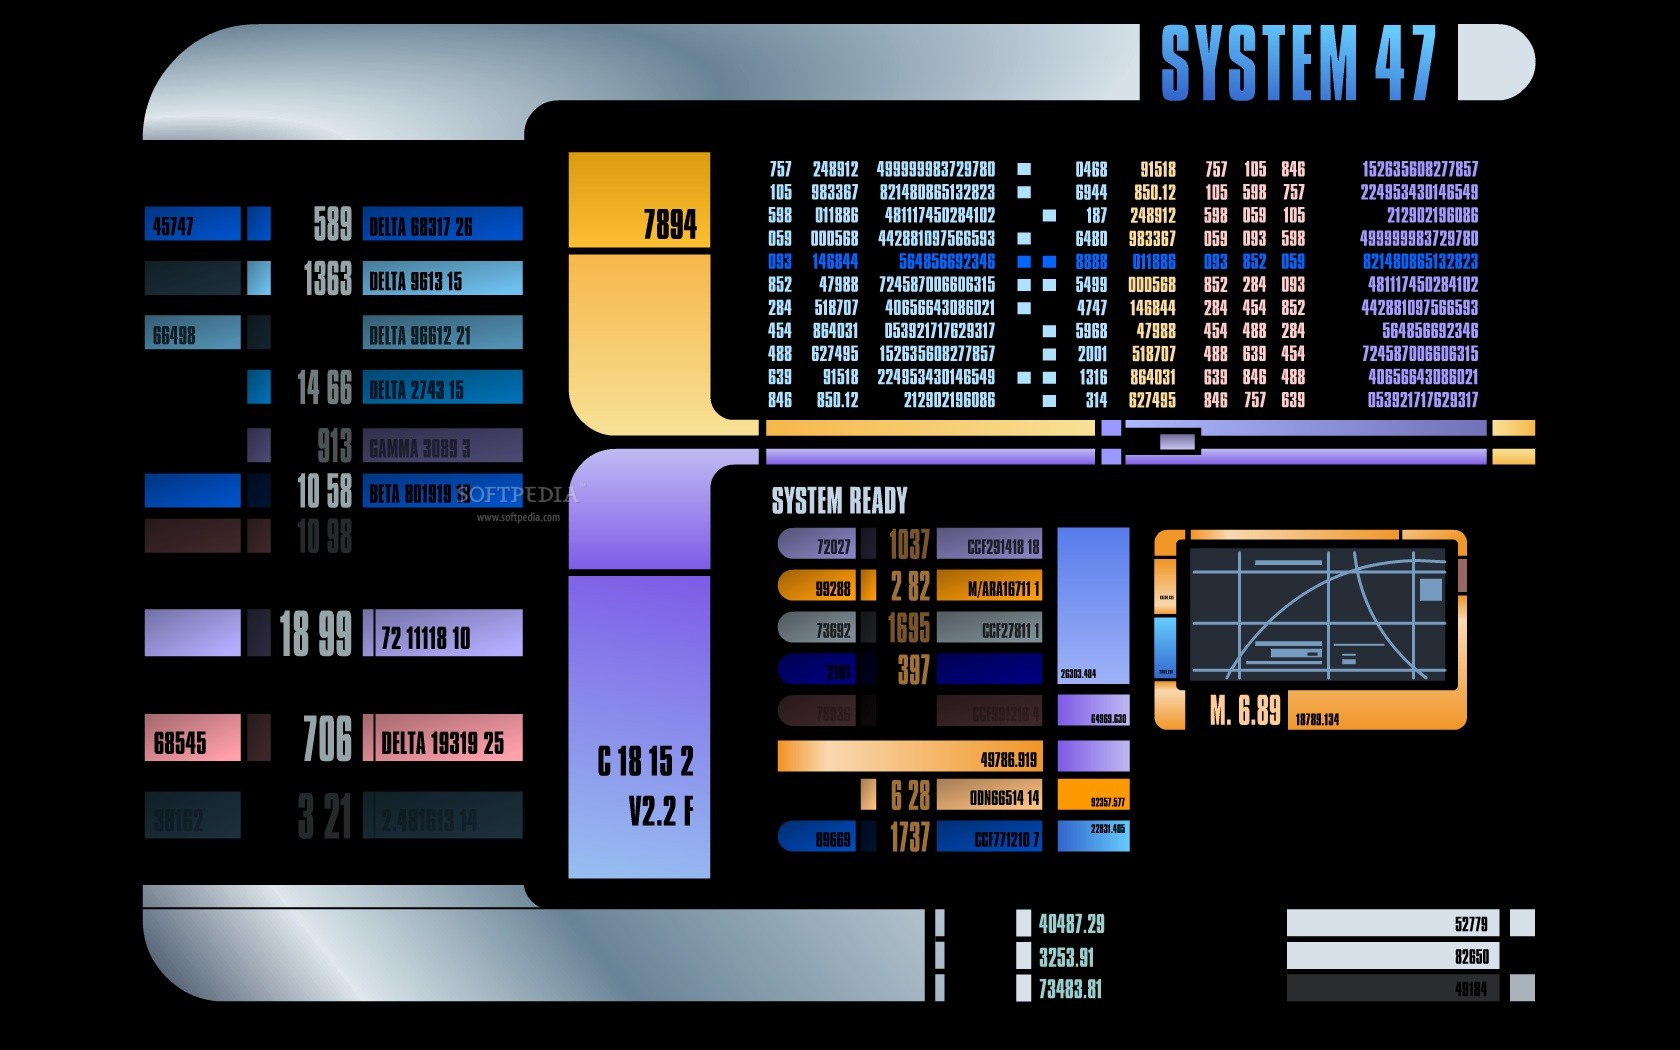 Star Trek LCARS Wallpaper - Bing images